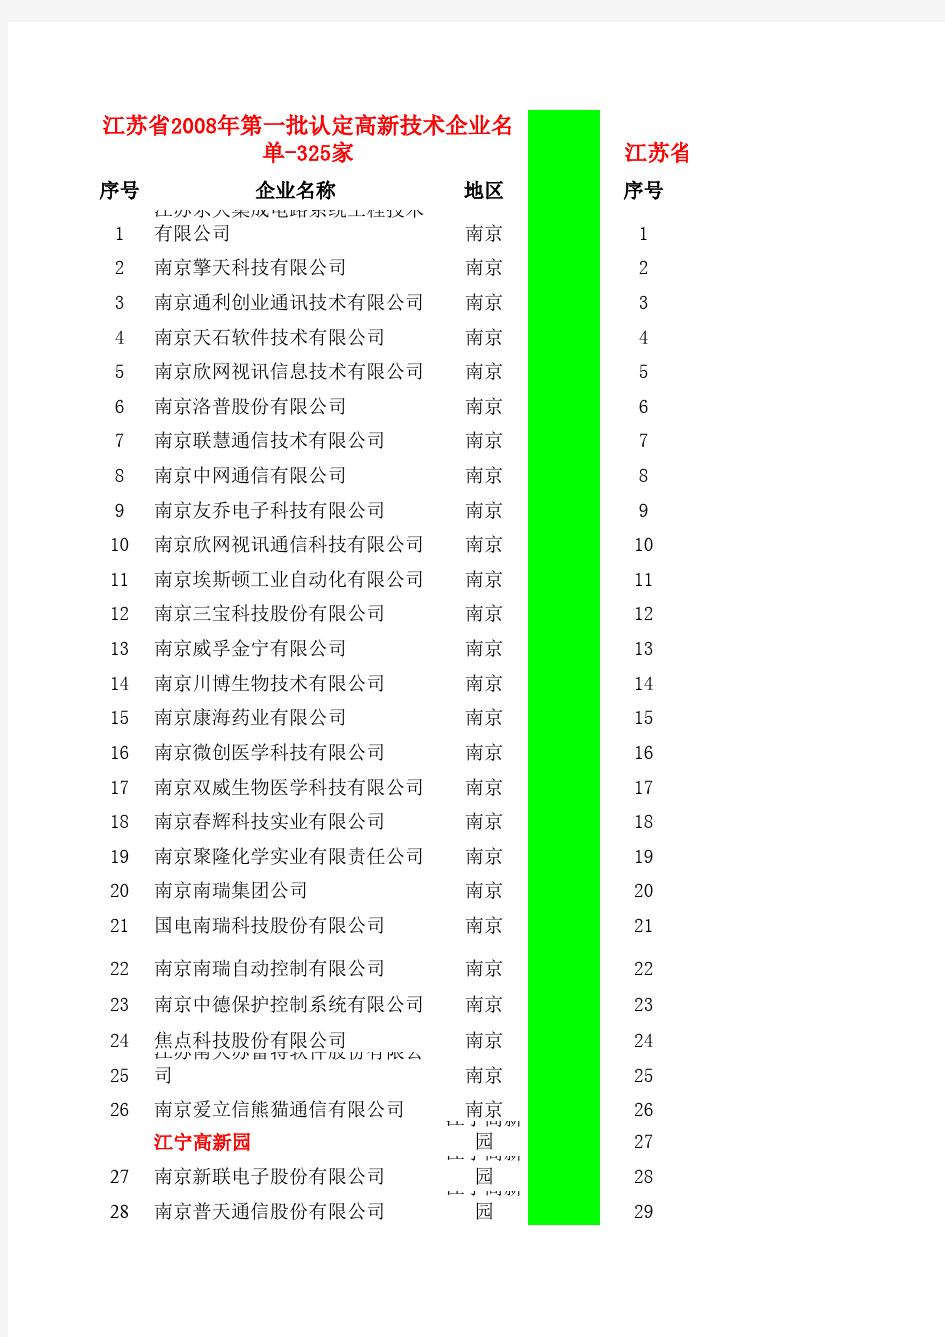 2008-2012年江苏省高新技术企业名单